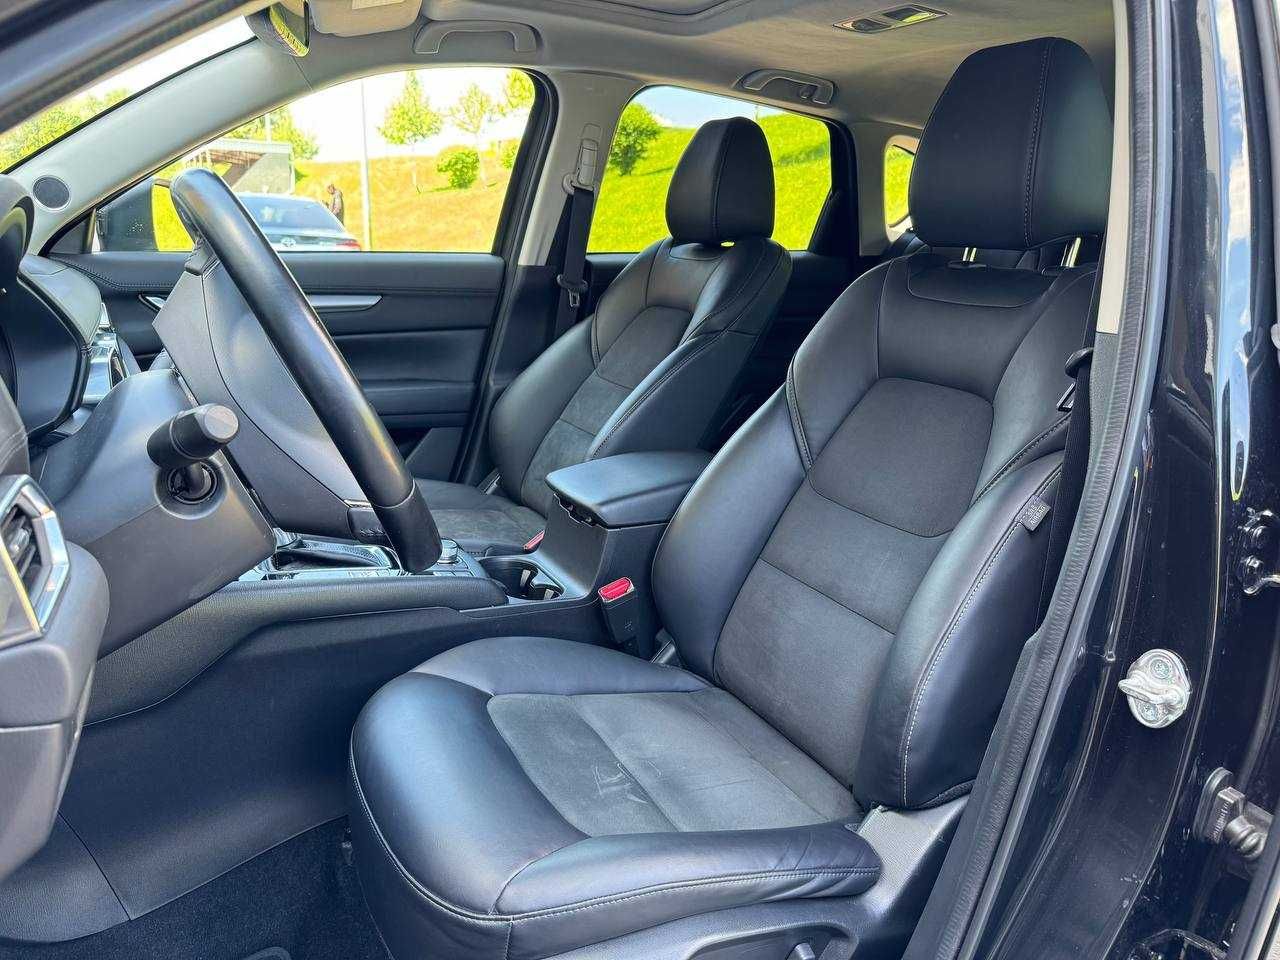 Mazda CX 5, 2019 рік, 2.5 бензин, автомат